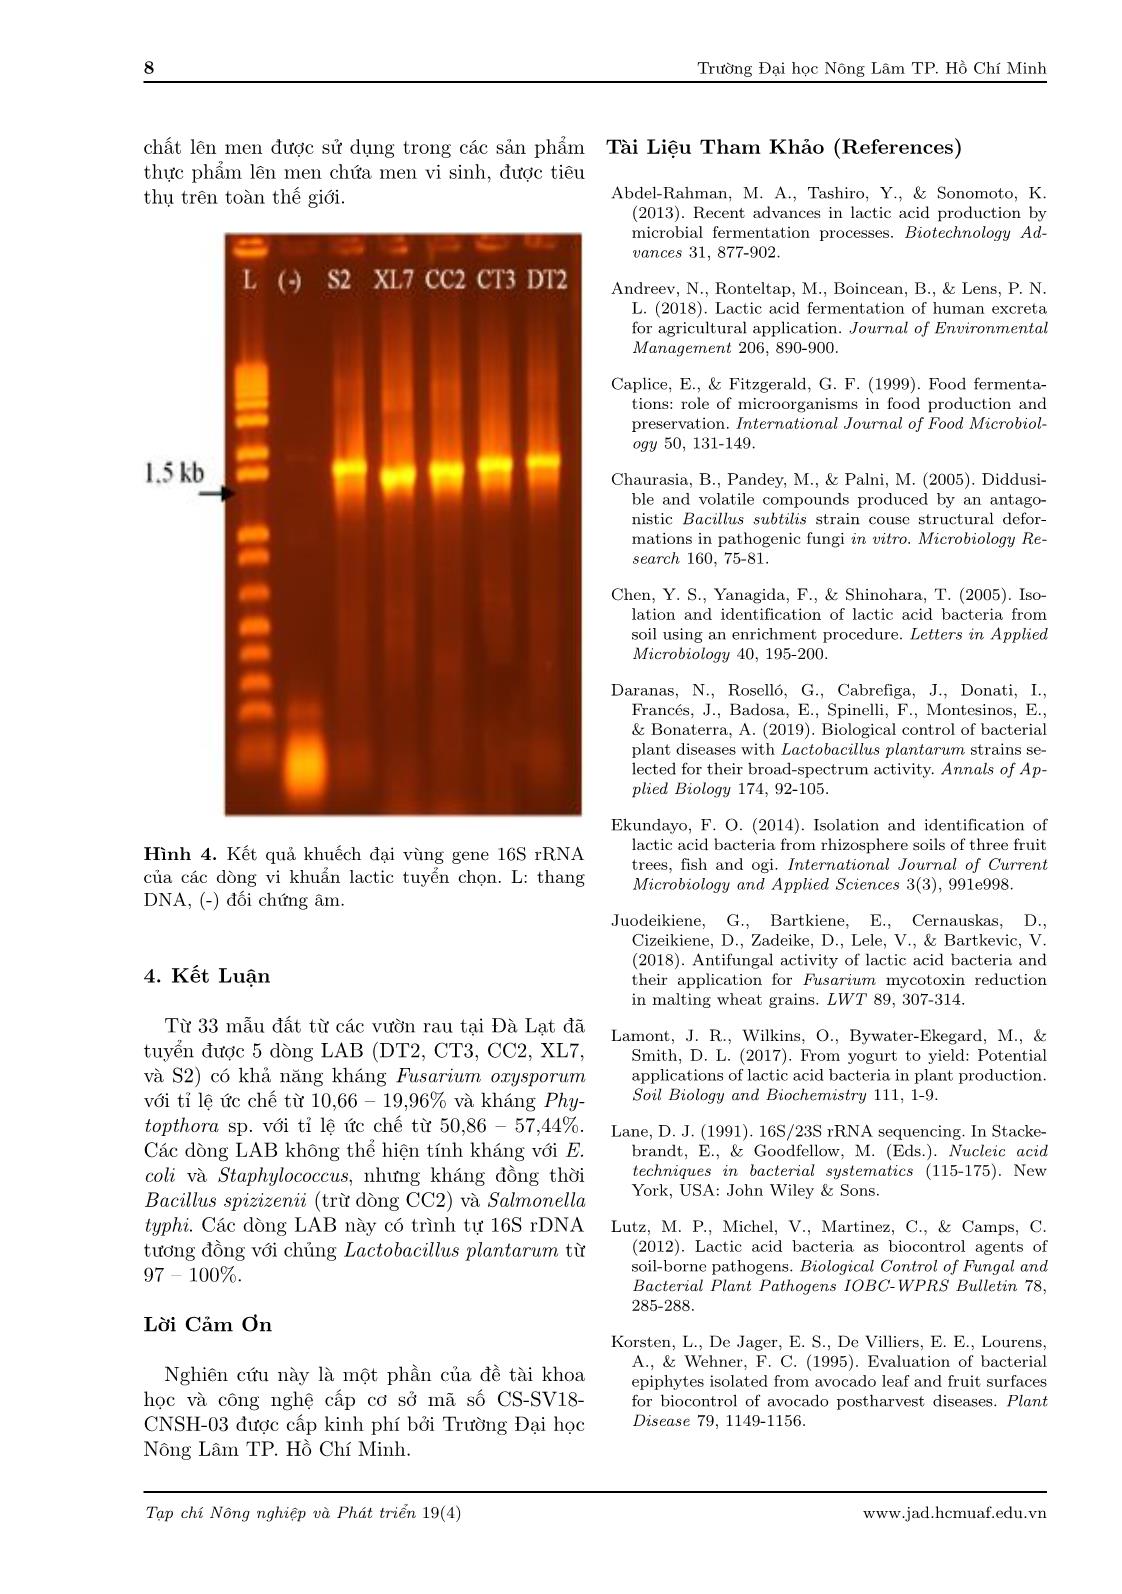 Phân lập và xác định vi khuẩn lactic từ đất trồng rau tại Đà Lạt, Lâm Đồng trang 8